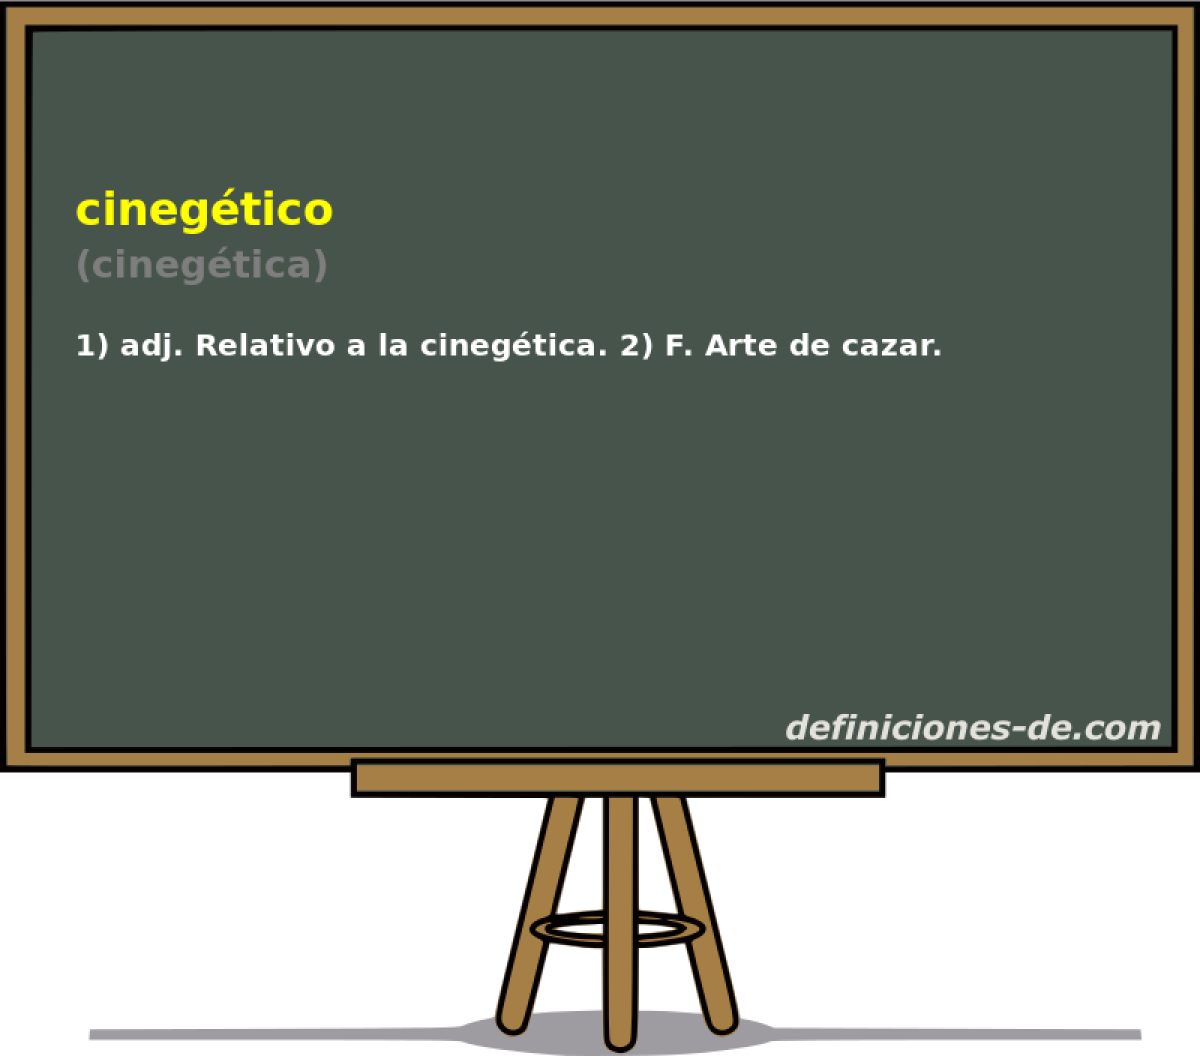 cinegtico (cinegtica)